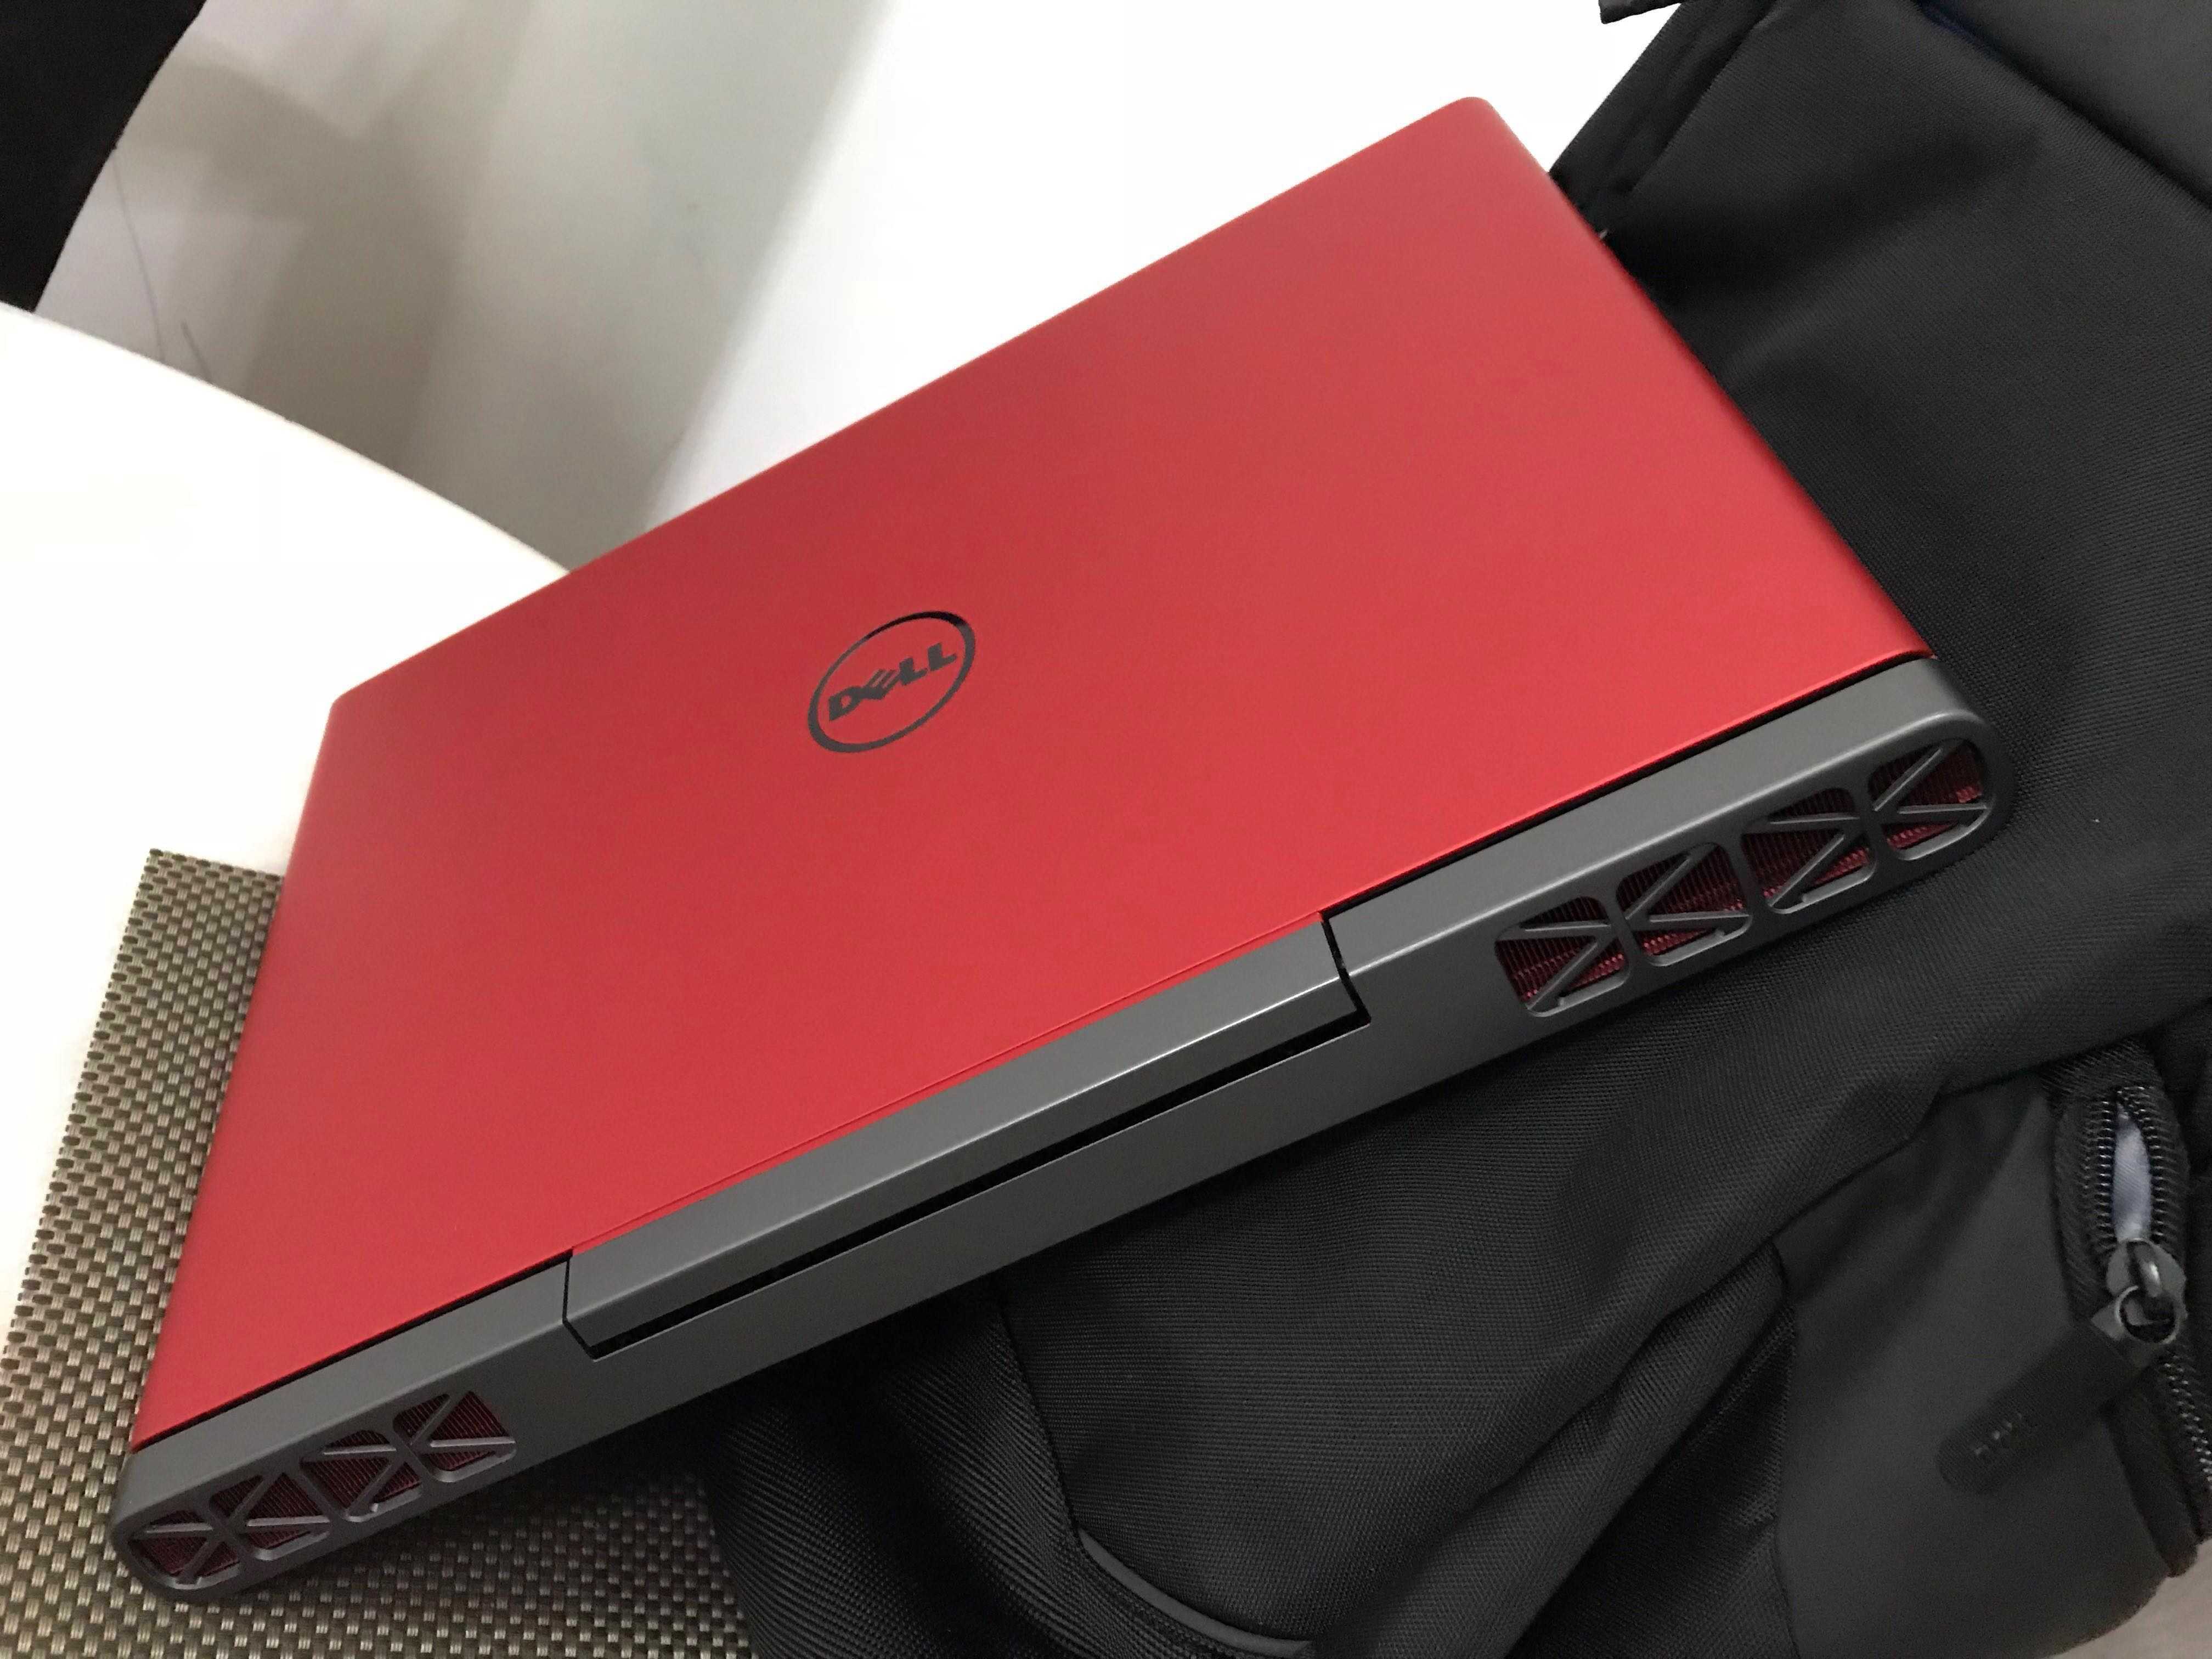 Dell inspiron 7567: обзор игрового ноутбука, цена